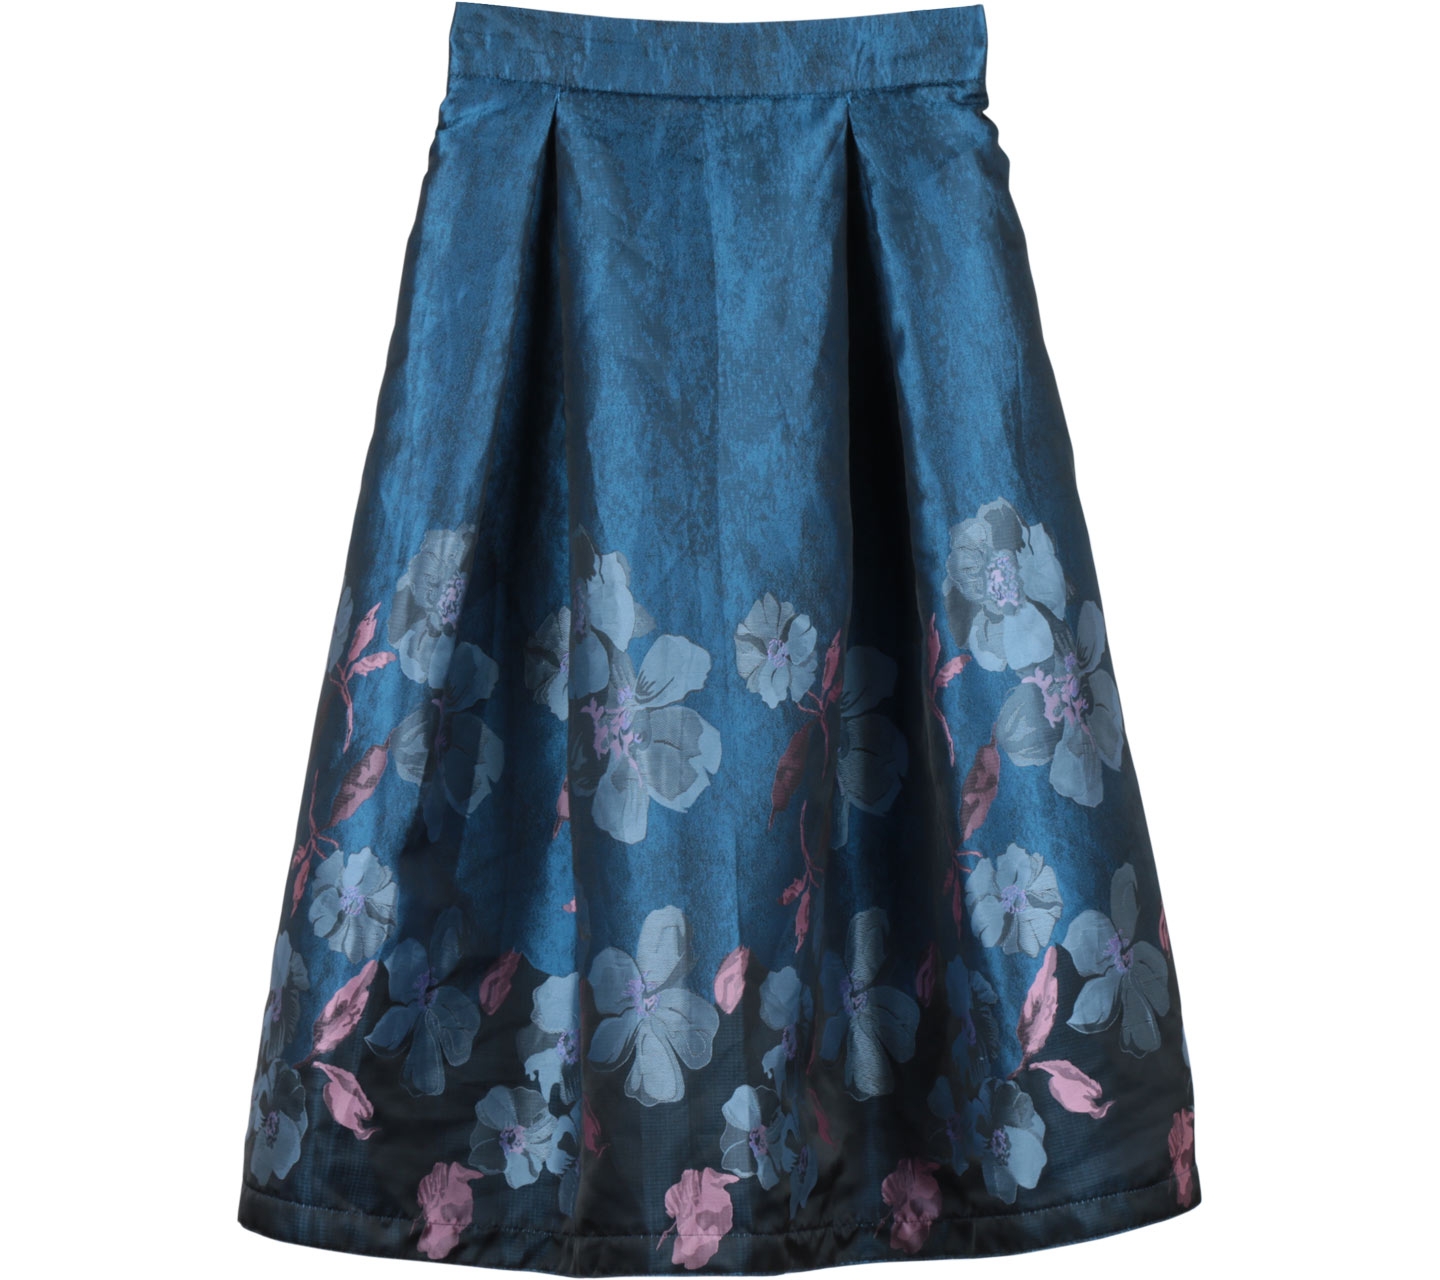 Bonschka Blue Floral Skirt